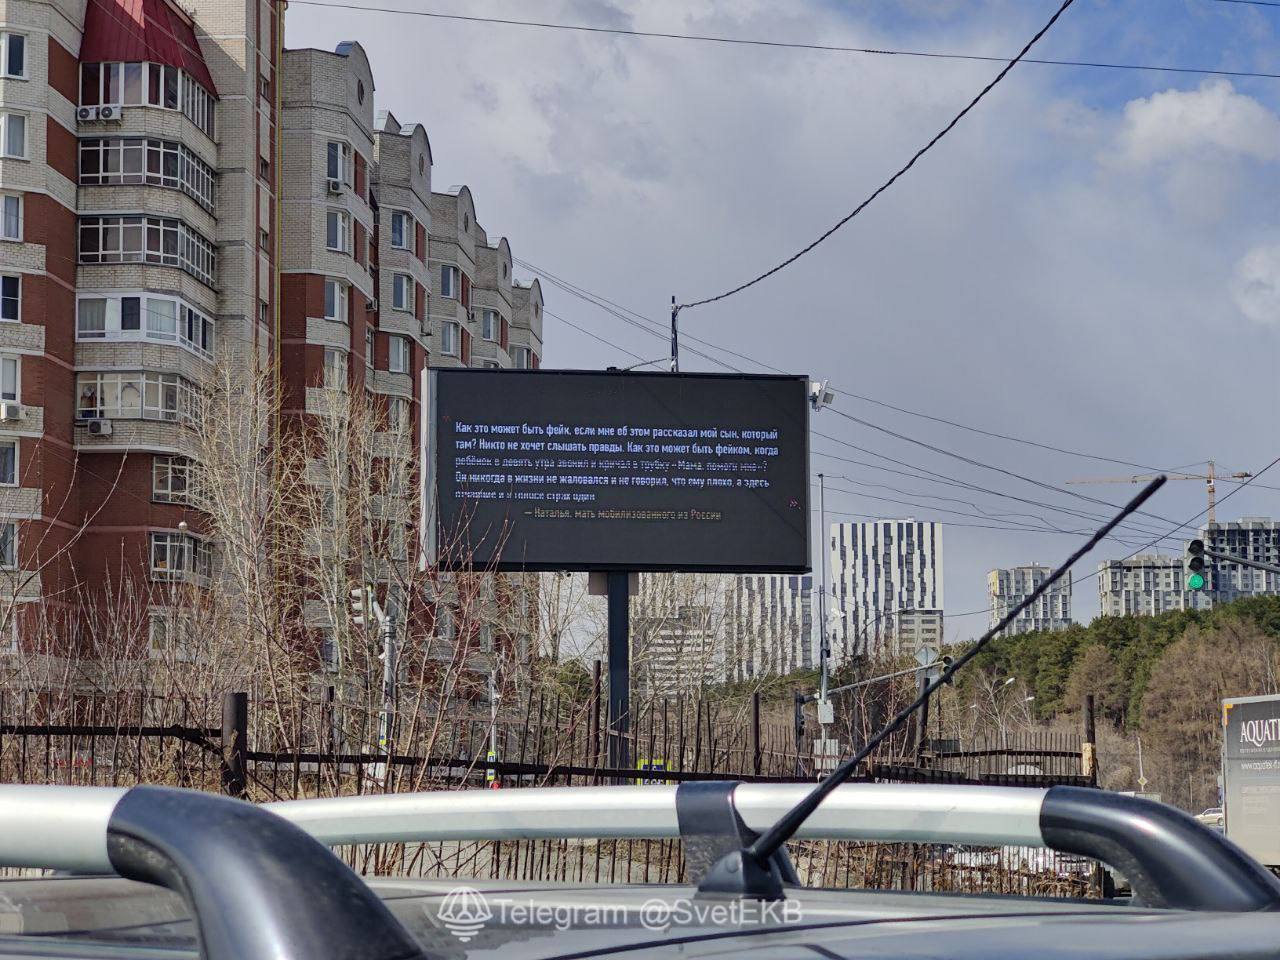 "Нас кинули как мясо, без прикрытия": в России появились рекламные щиты с цитатами "мобиков" о реалиях войны против Украины. Фото